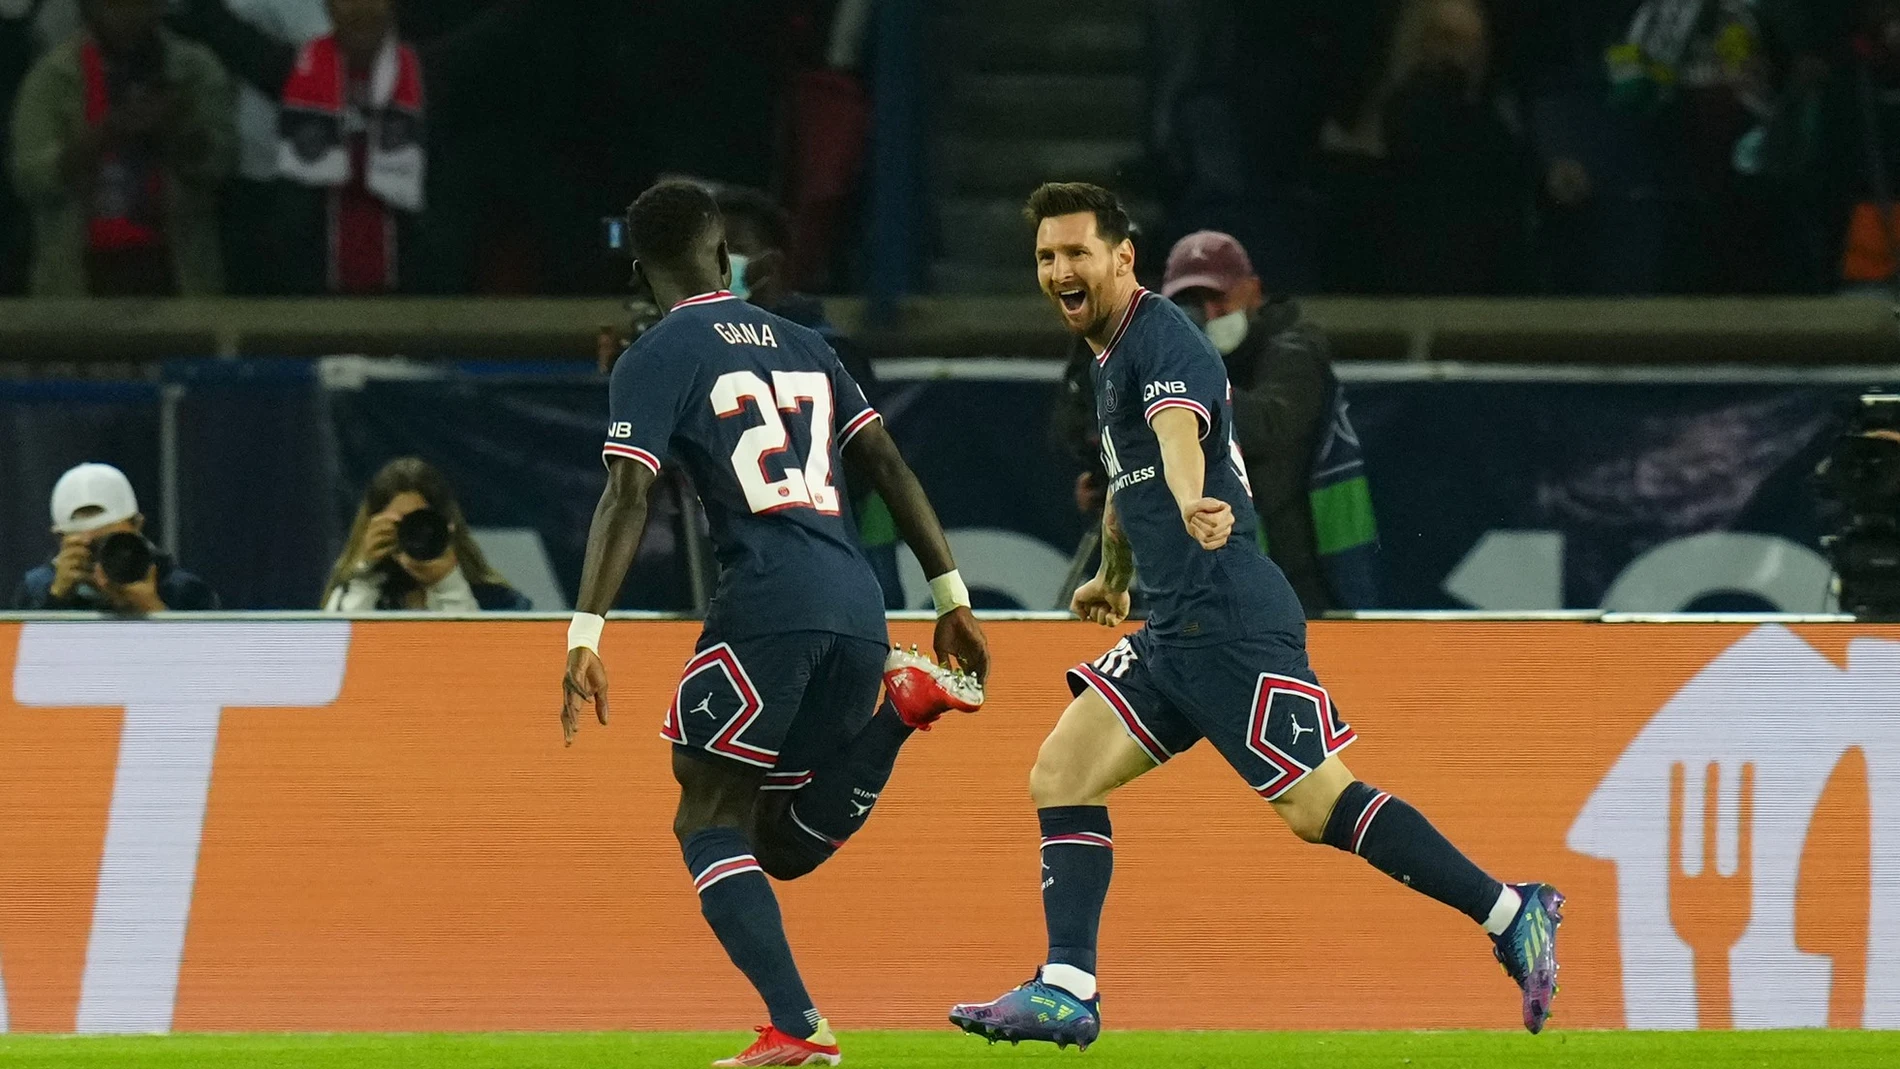 Idrissa Gueye con Messi durante un partido del PSG.